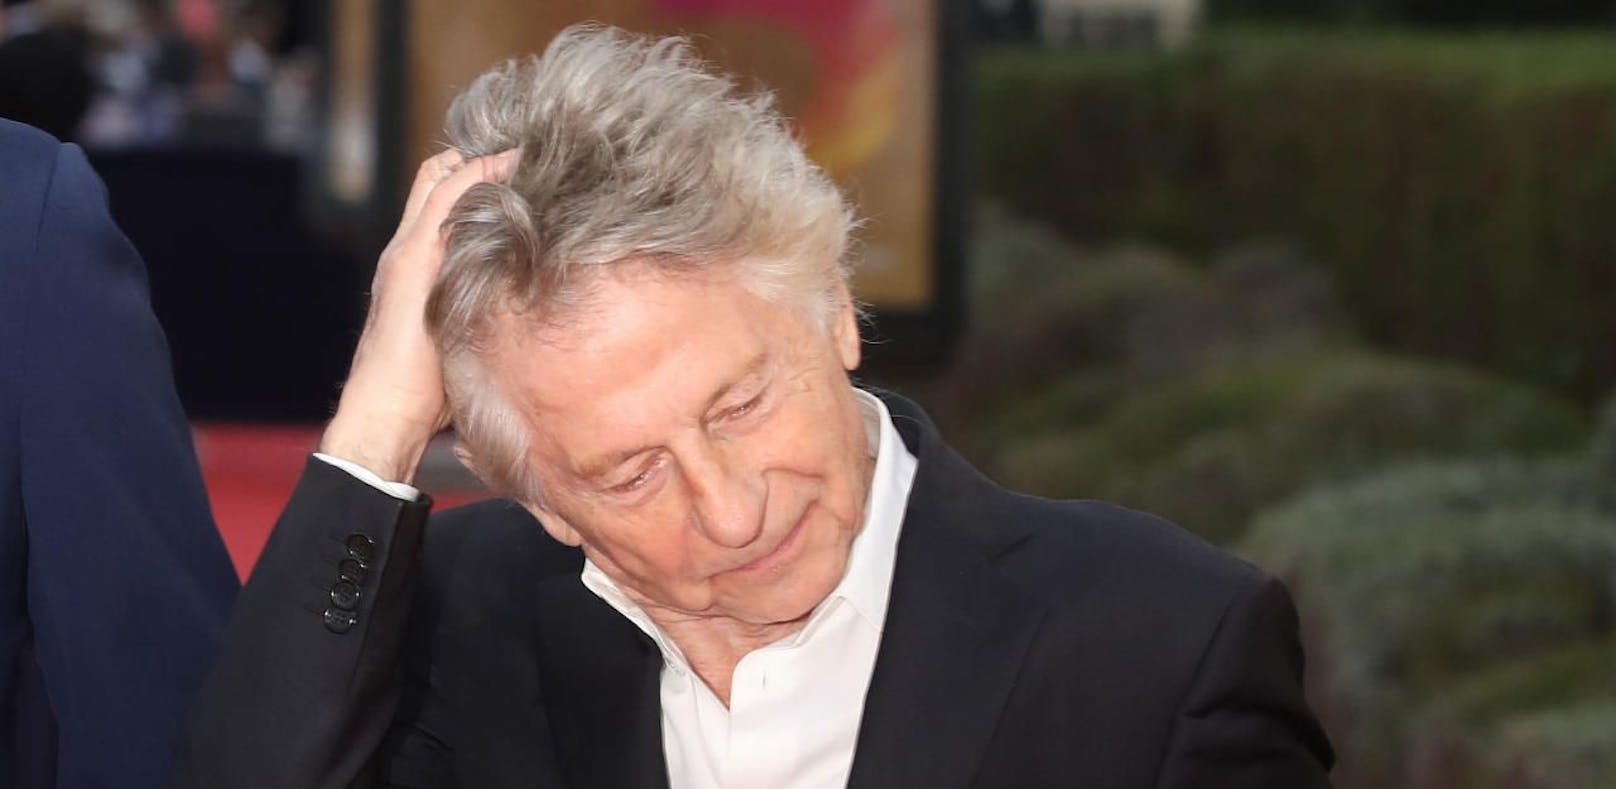 Erhielt einen César für die beste Regie: Roman Polanski. Der französisch-polnische Regisseur war bei der Preisverleihung am Freitagabend in Paris nicht dabei. (Archivbild)